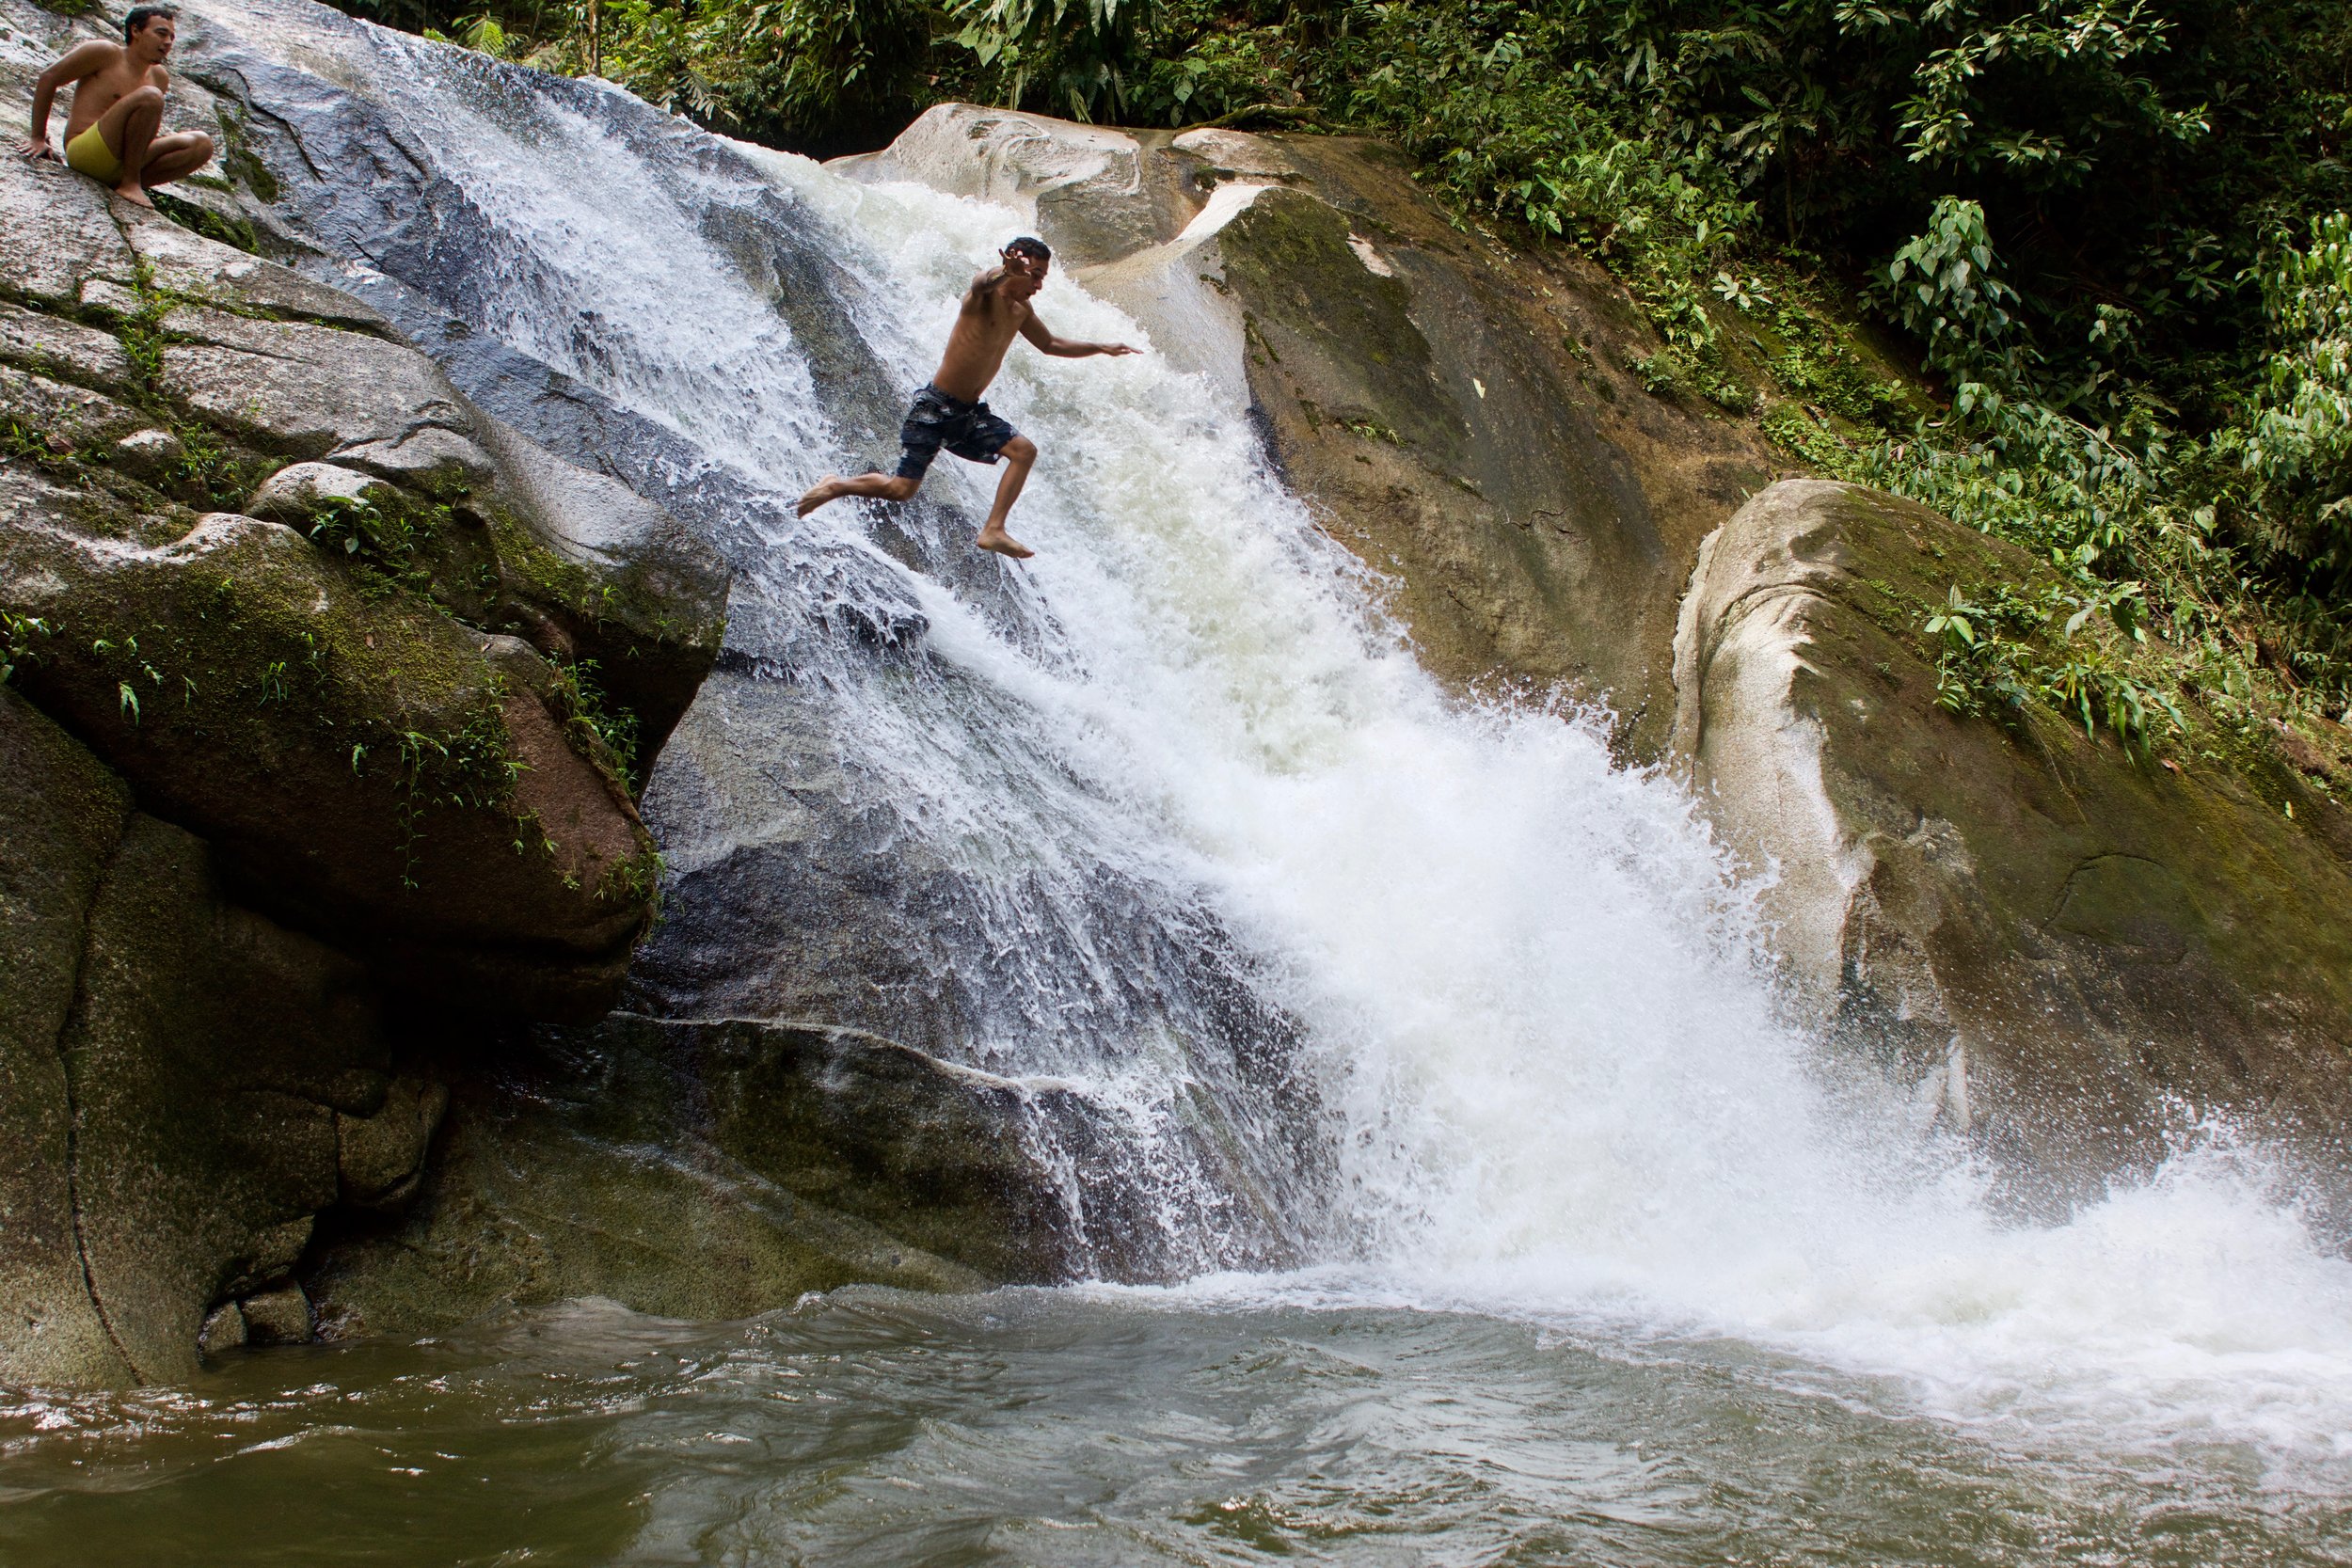 Daniel jumping off a waterfall